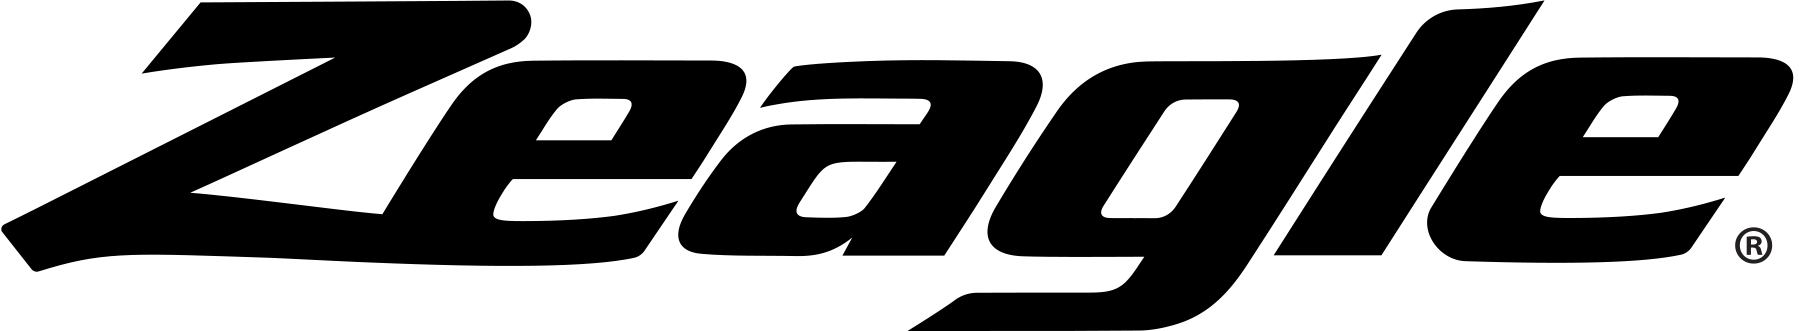 Zeagle Logo K Registered